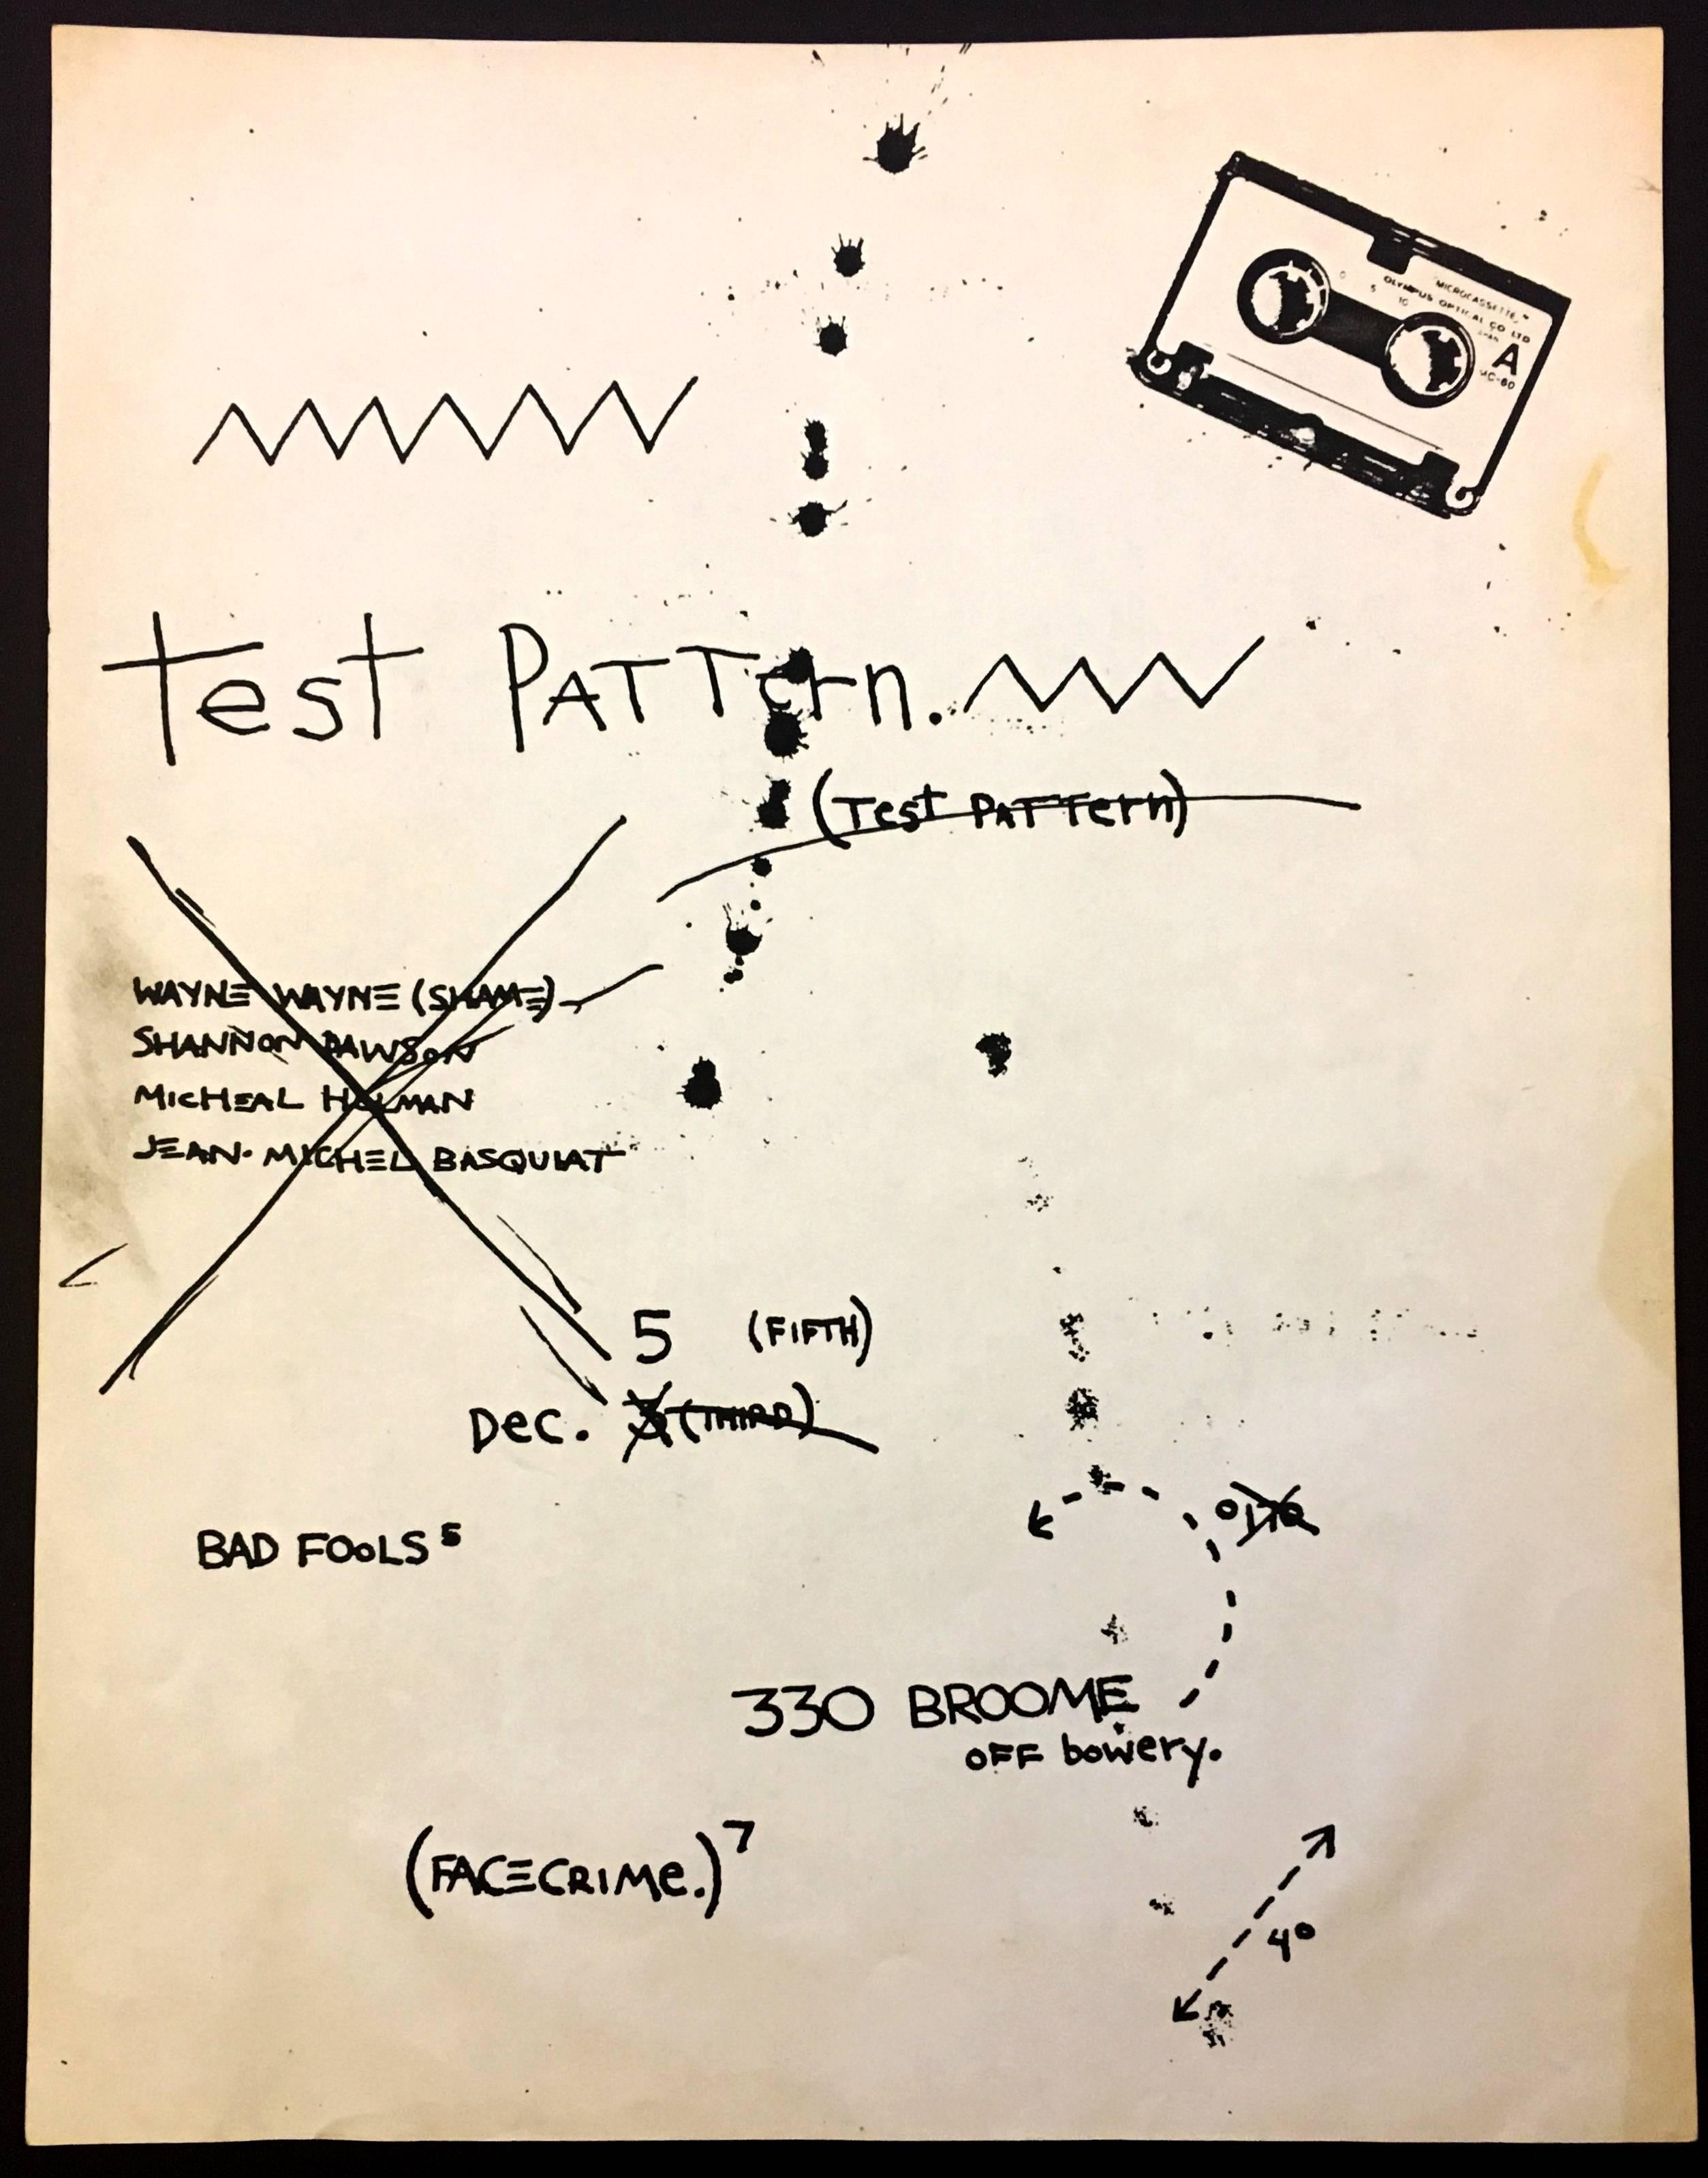 Mire de Jean-Michel Basquiat 1979 :
Basquiat a créé ce flyer à l'occasion d'une représentation de son groupe, Test Pattern (rebaptisé plus tard Gray), dans le célèbre espace artistique de Downtown, 